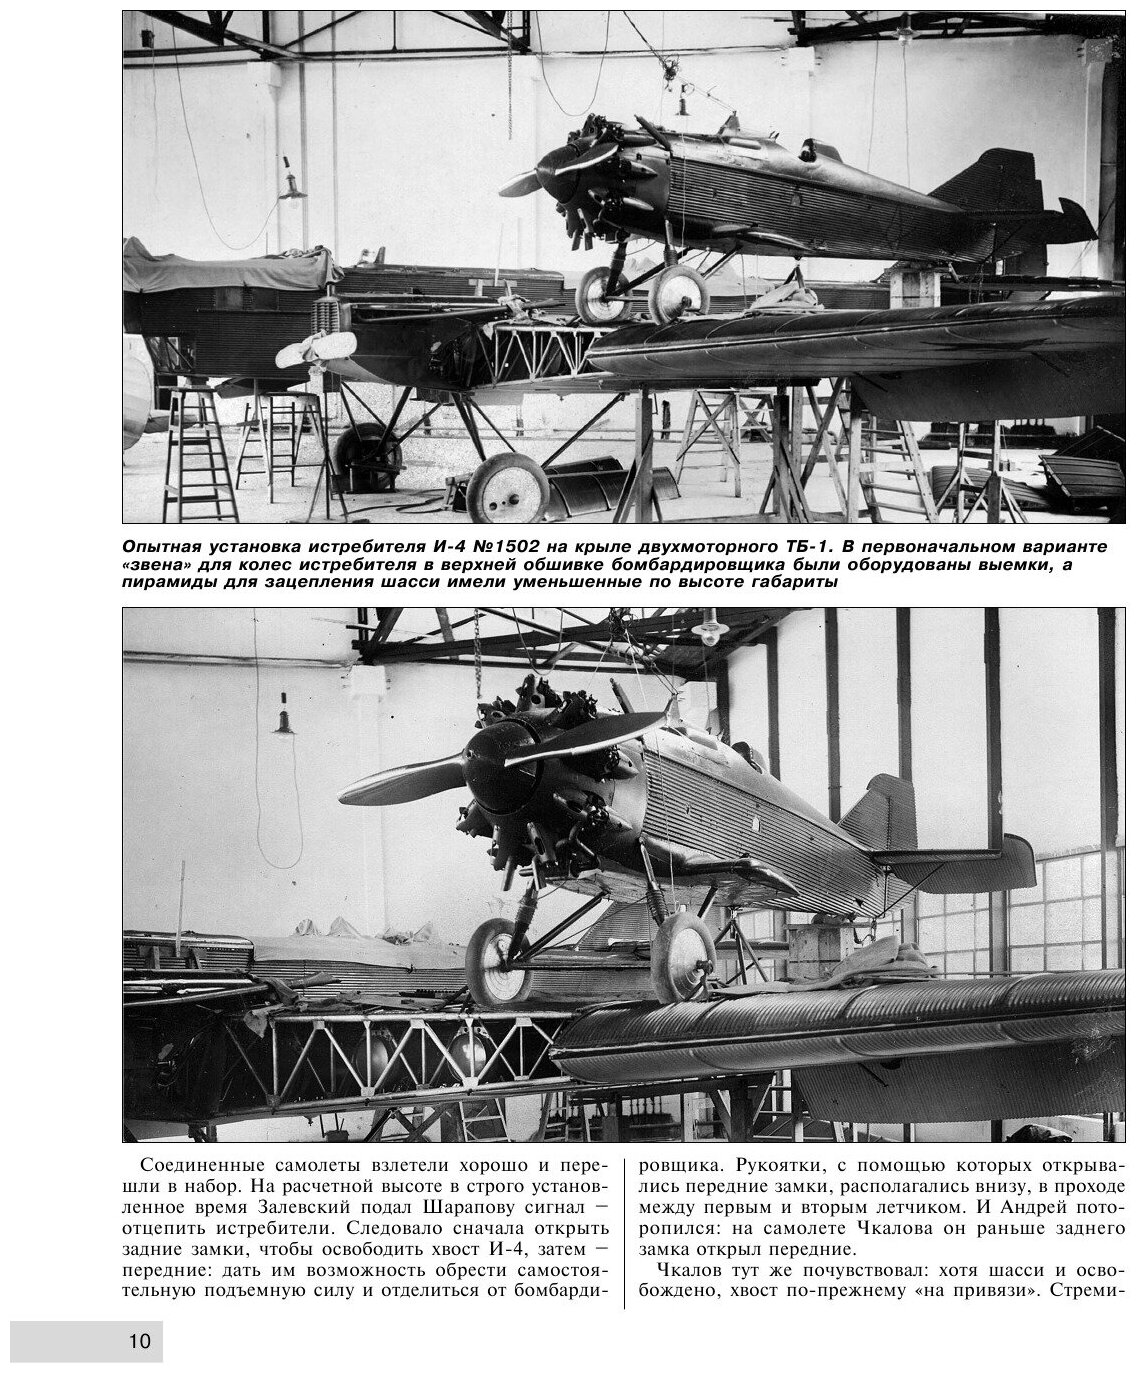 Летающие авианосцы Сталина. Все модификации и проекты «Звена» Вахмистрова - фото №5